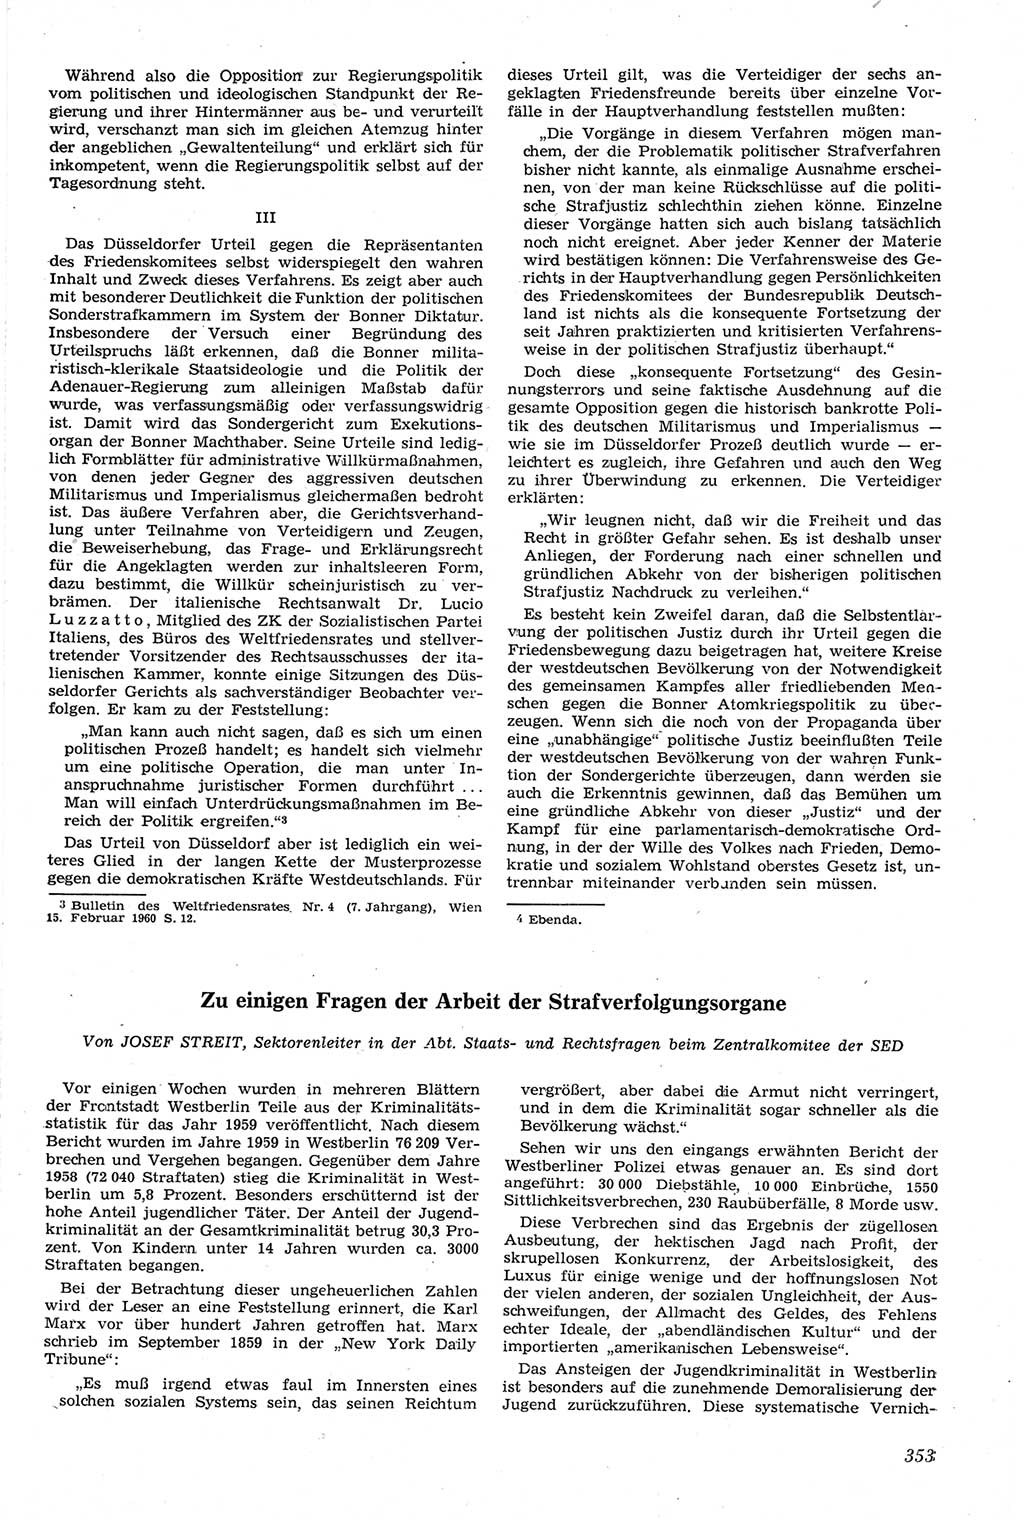 Neue Justiz (NJ), Zeitschrift für Recht und Rechtswissenschaft [Deutsche Demokratische Republik (DDR)], 14. Jahrgang 1960, Seite 353 (NJ DDR 1960, S. 353)